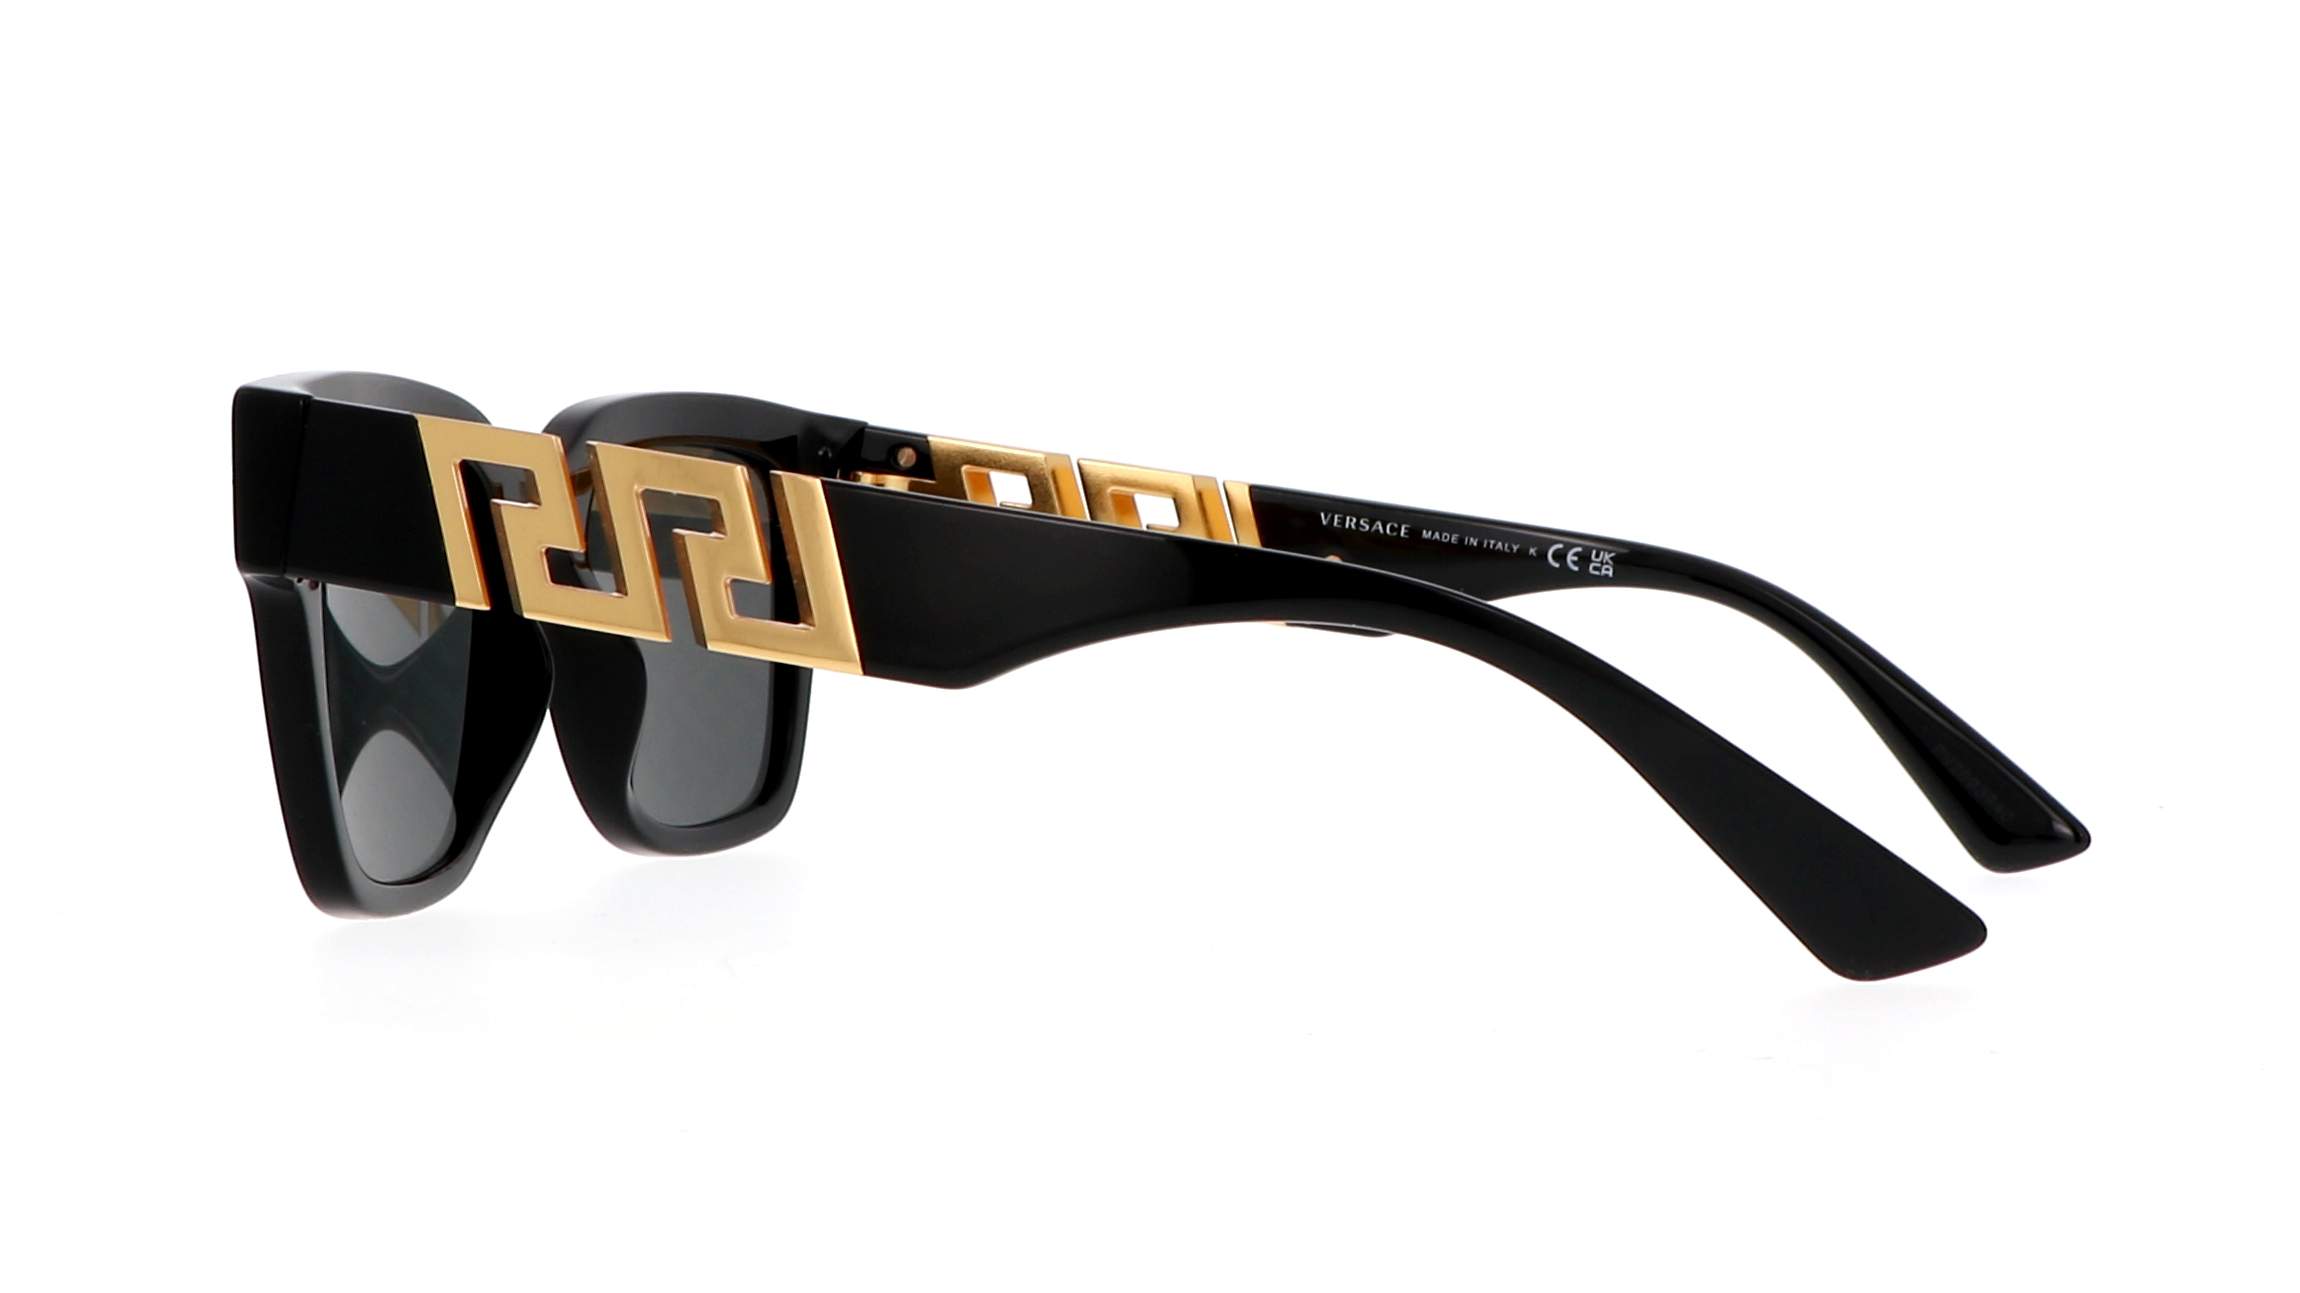 Sunglasses Versace Ve4421 Gb1f 52 20 Black In Stock Price 12079